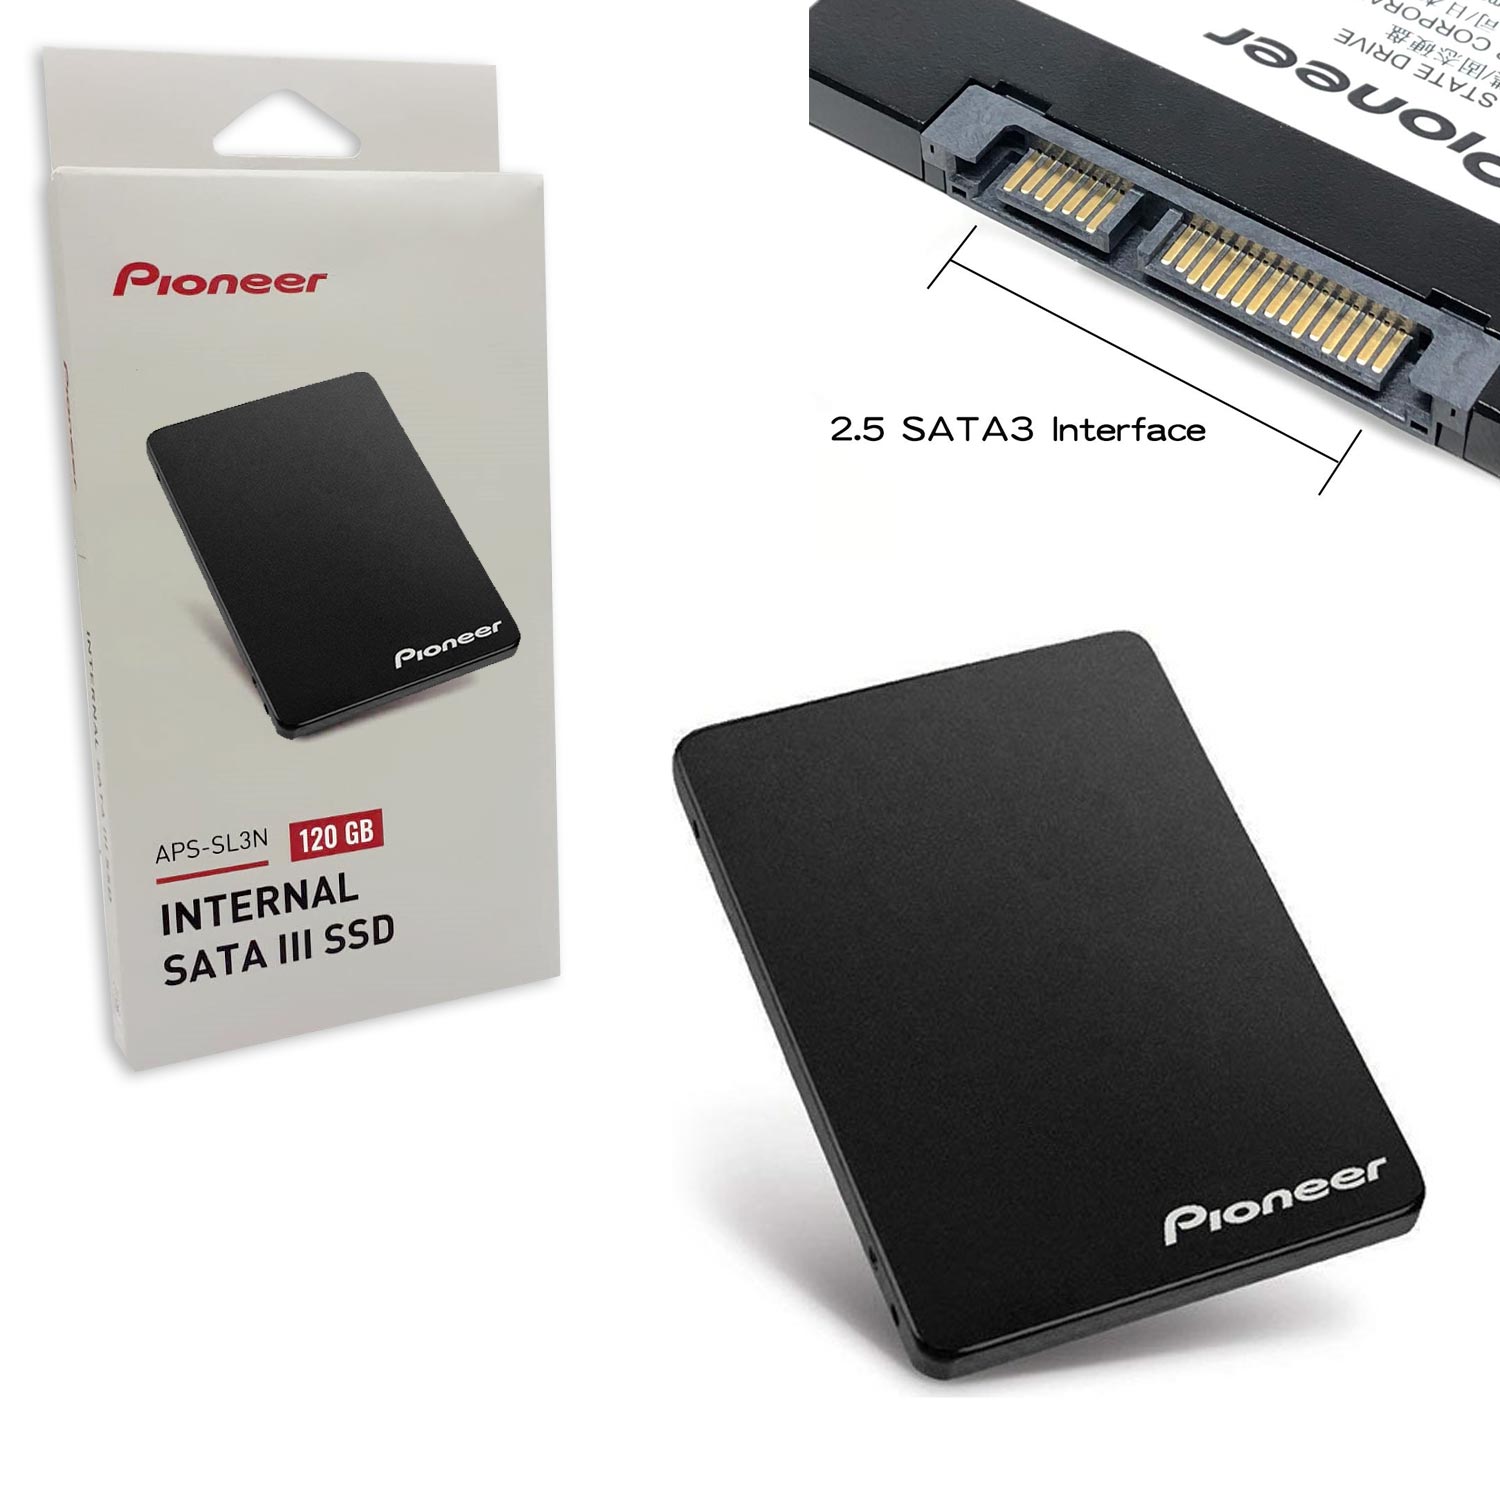 SSD 120GB 2.5 SATA 3 PIONEER APS-SL3N